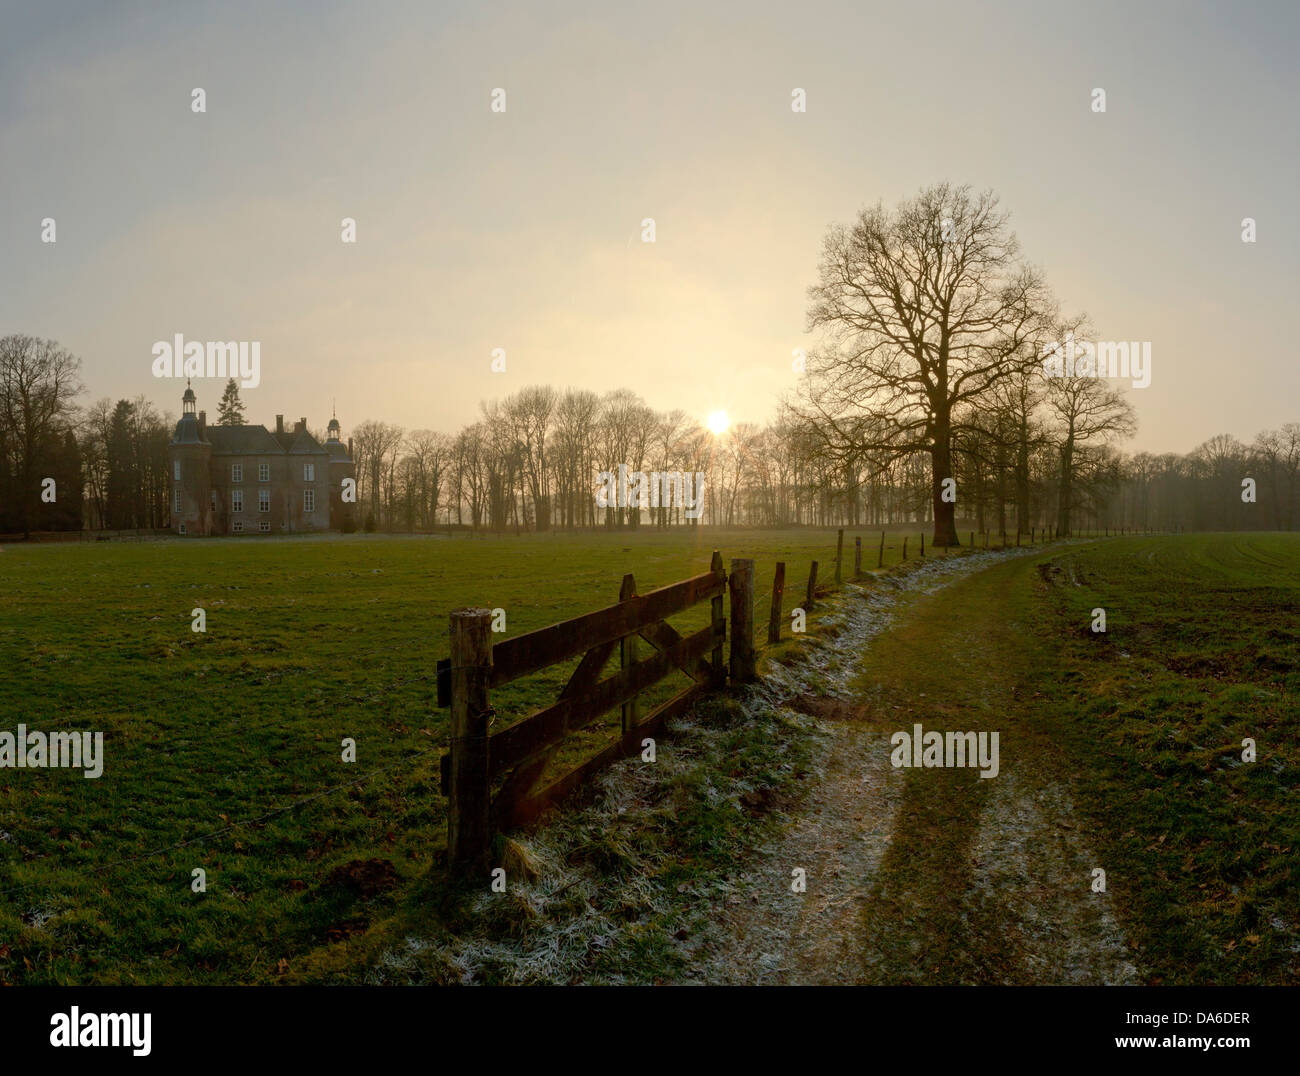 Gelderland, Netherlands, Europe, Vorden, Hackfort, castle, field, meadow, trees, winter, Stock Photo